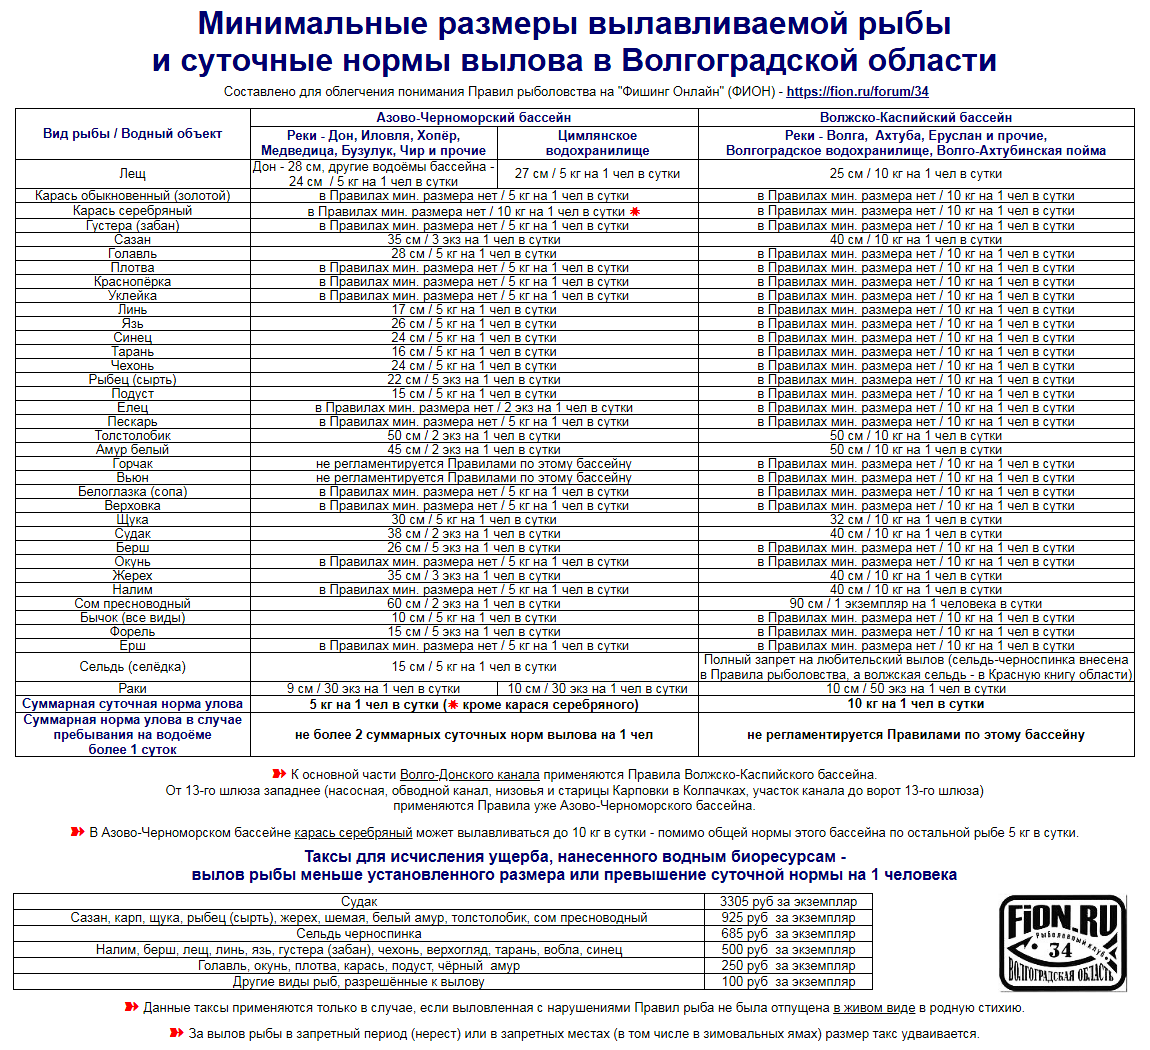 Штраф за ловлю в нерестовый запрет. Нормы вылова рыбы в Волгоградской области в 2021 году. Норматив вылова рыбы. Нормы вылова рыбы в 2023 году. Размер рыбы разрешенной к вылову.